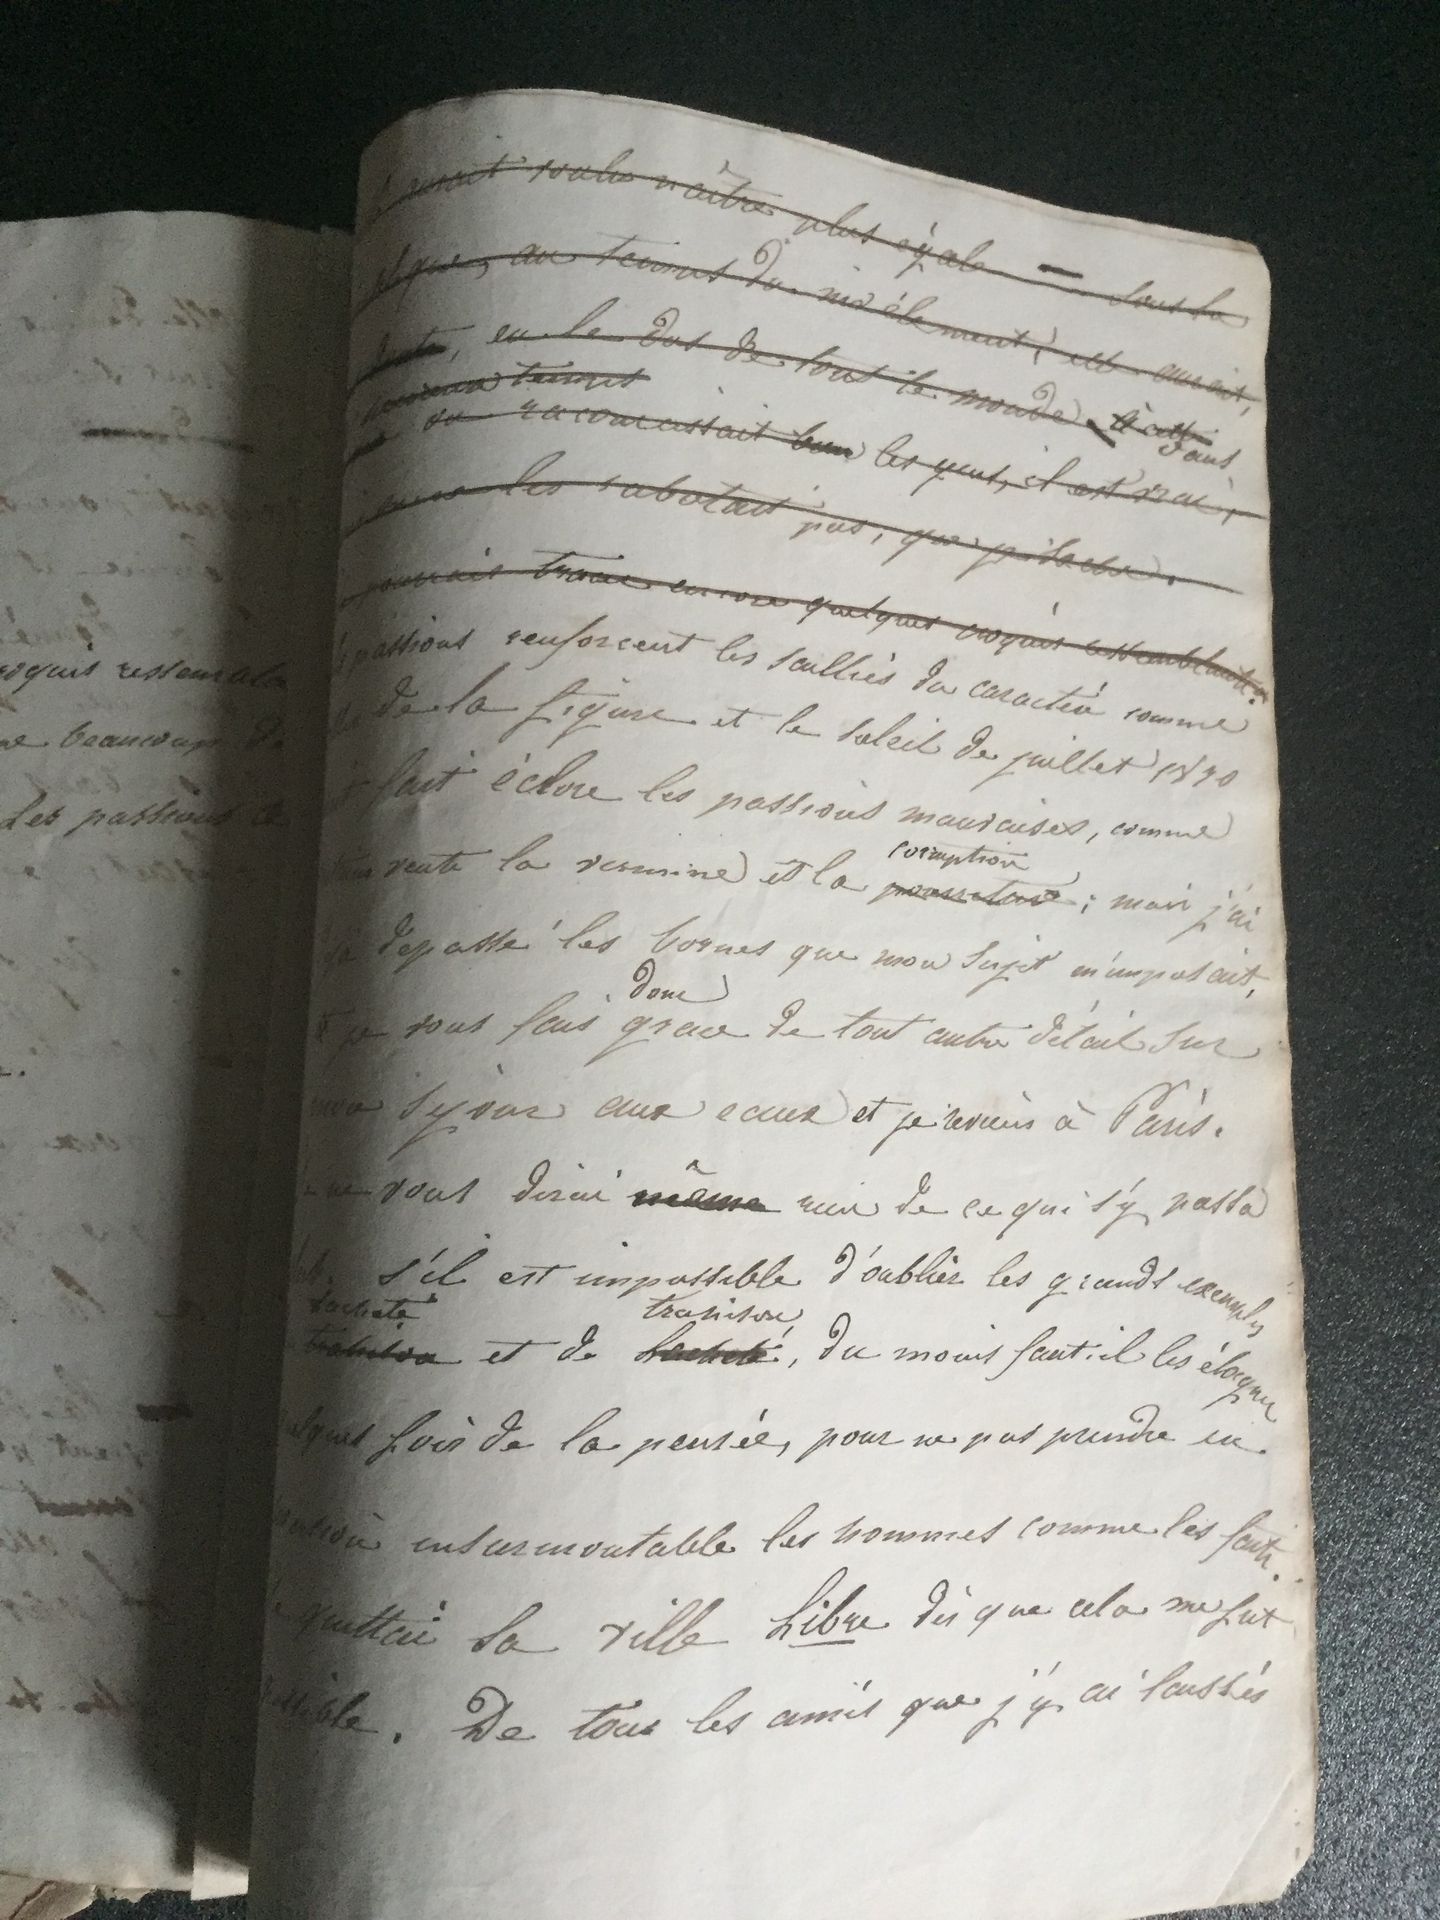 Null [1830年革命] 题为 "Histoire d'un serin "的手稿，上面有划掉的 "Un souvenir de 1830 "字样。一本平装&hellip;